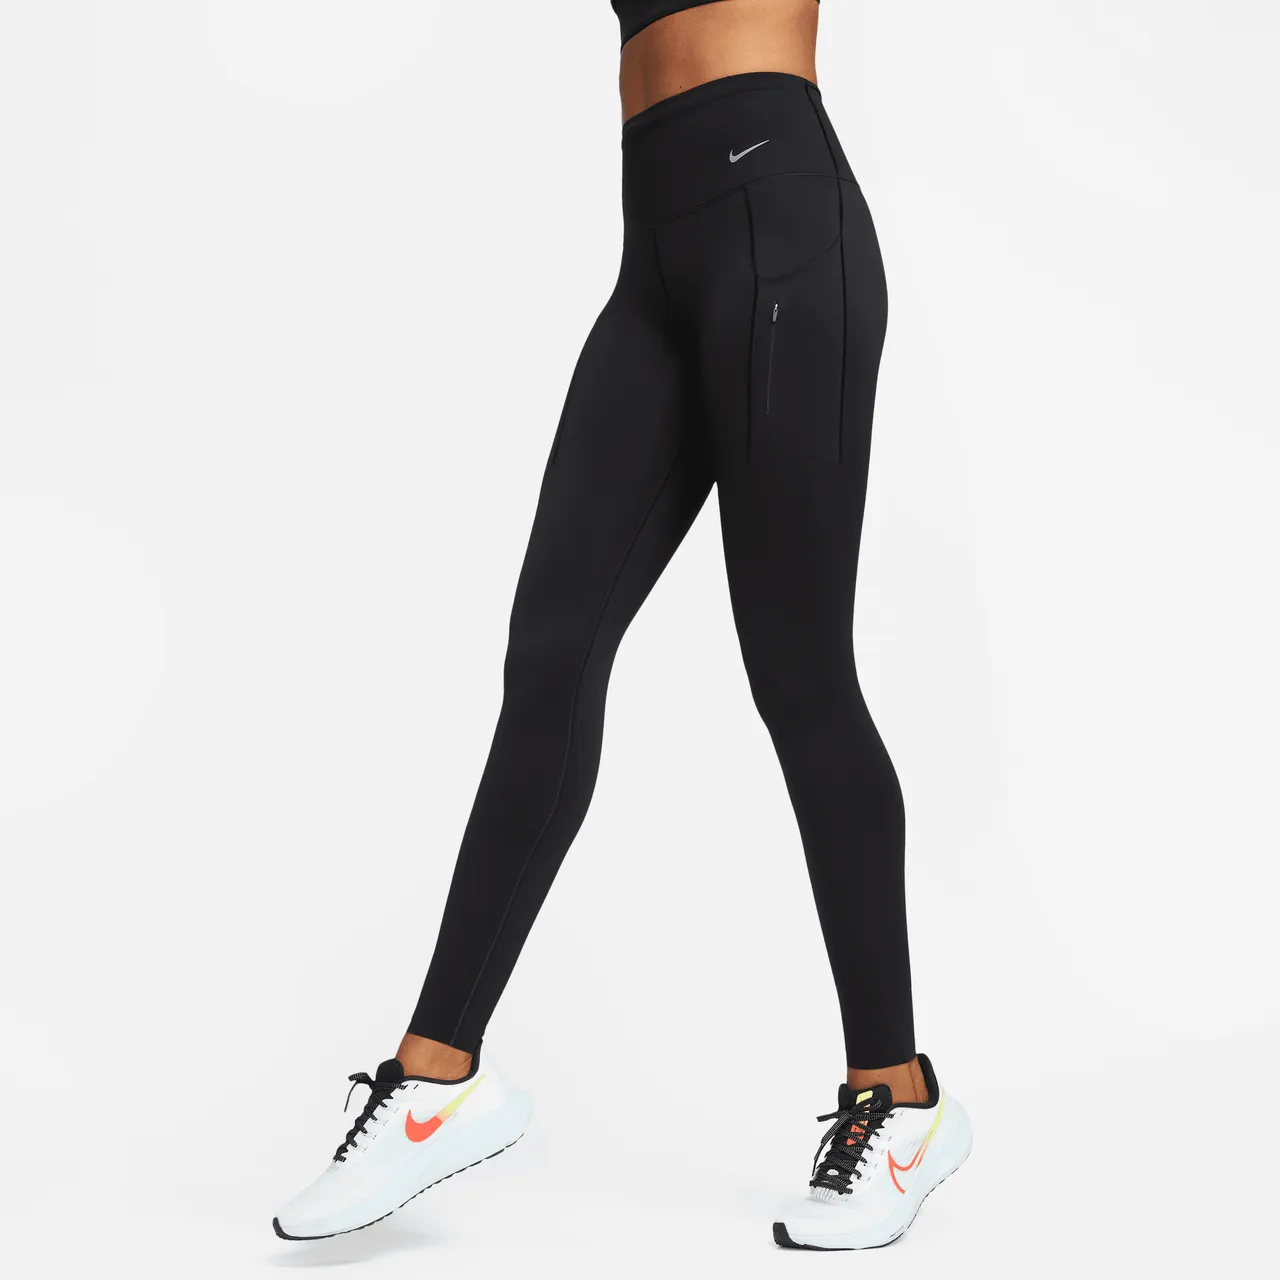 Nike Go Women's Firm-Support High-Waisted Full-Length Leggings with Pockets - Black - Nylon